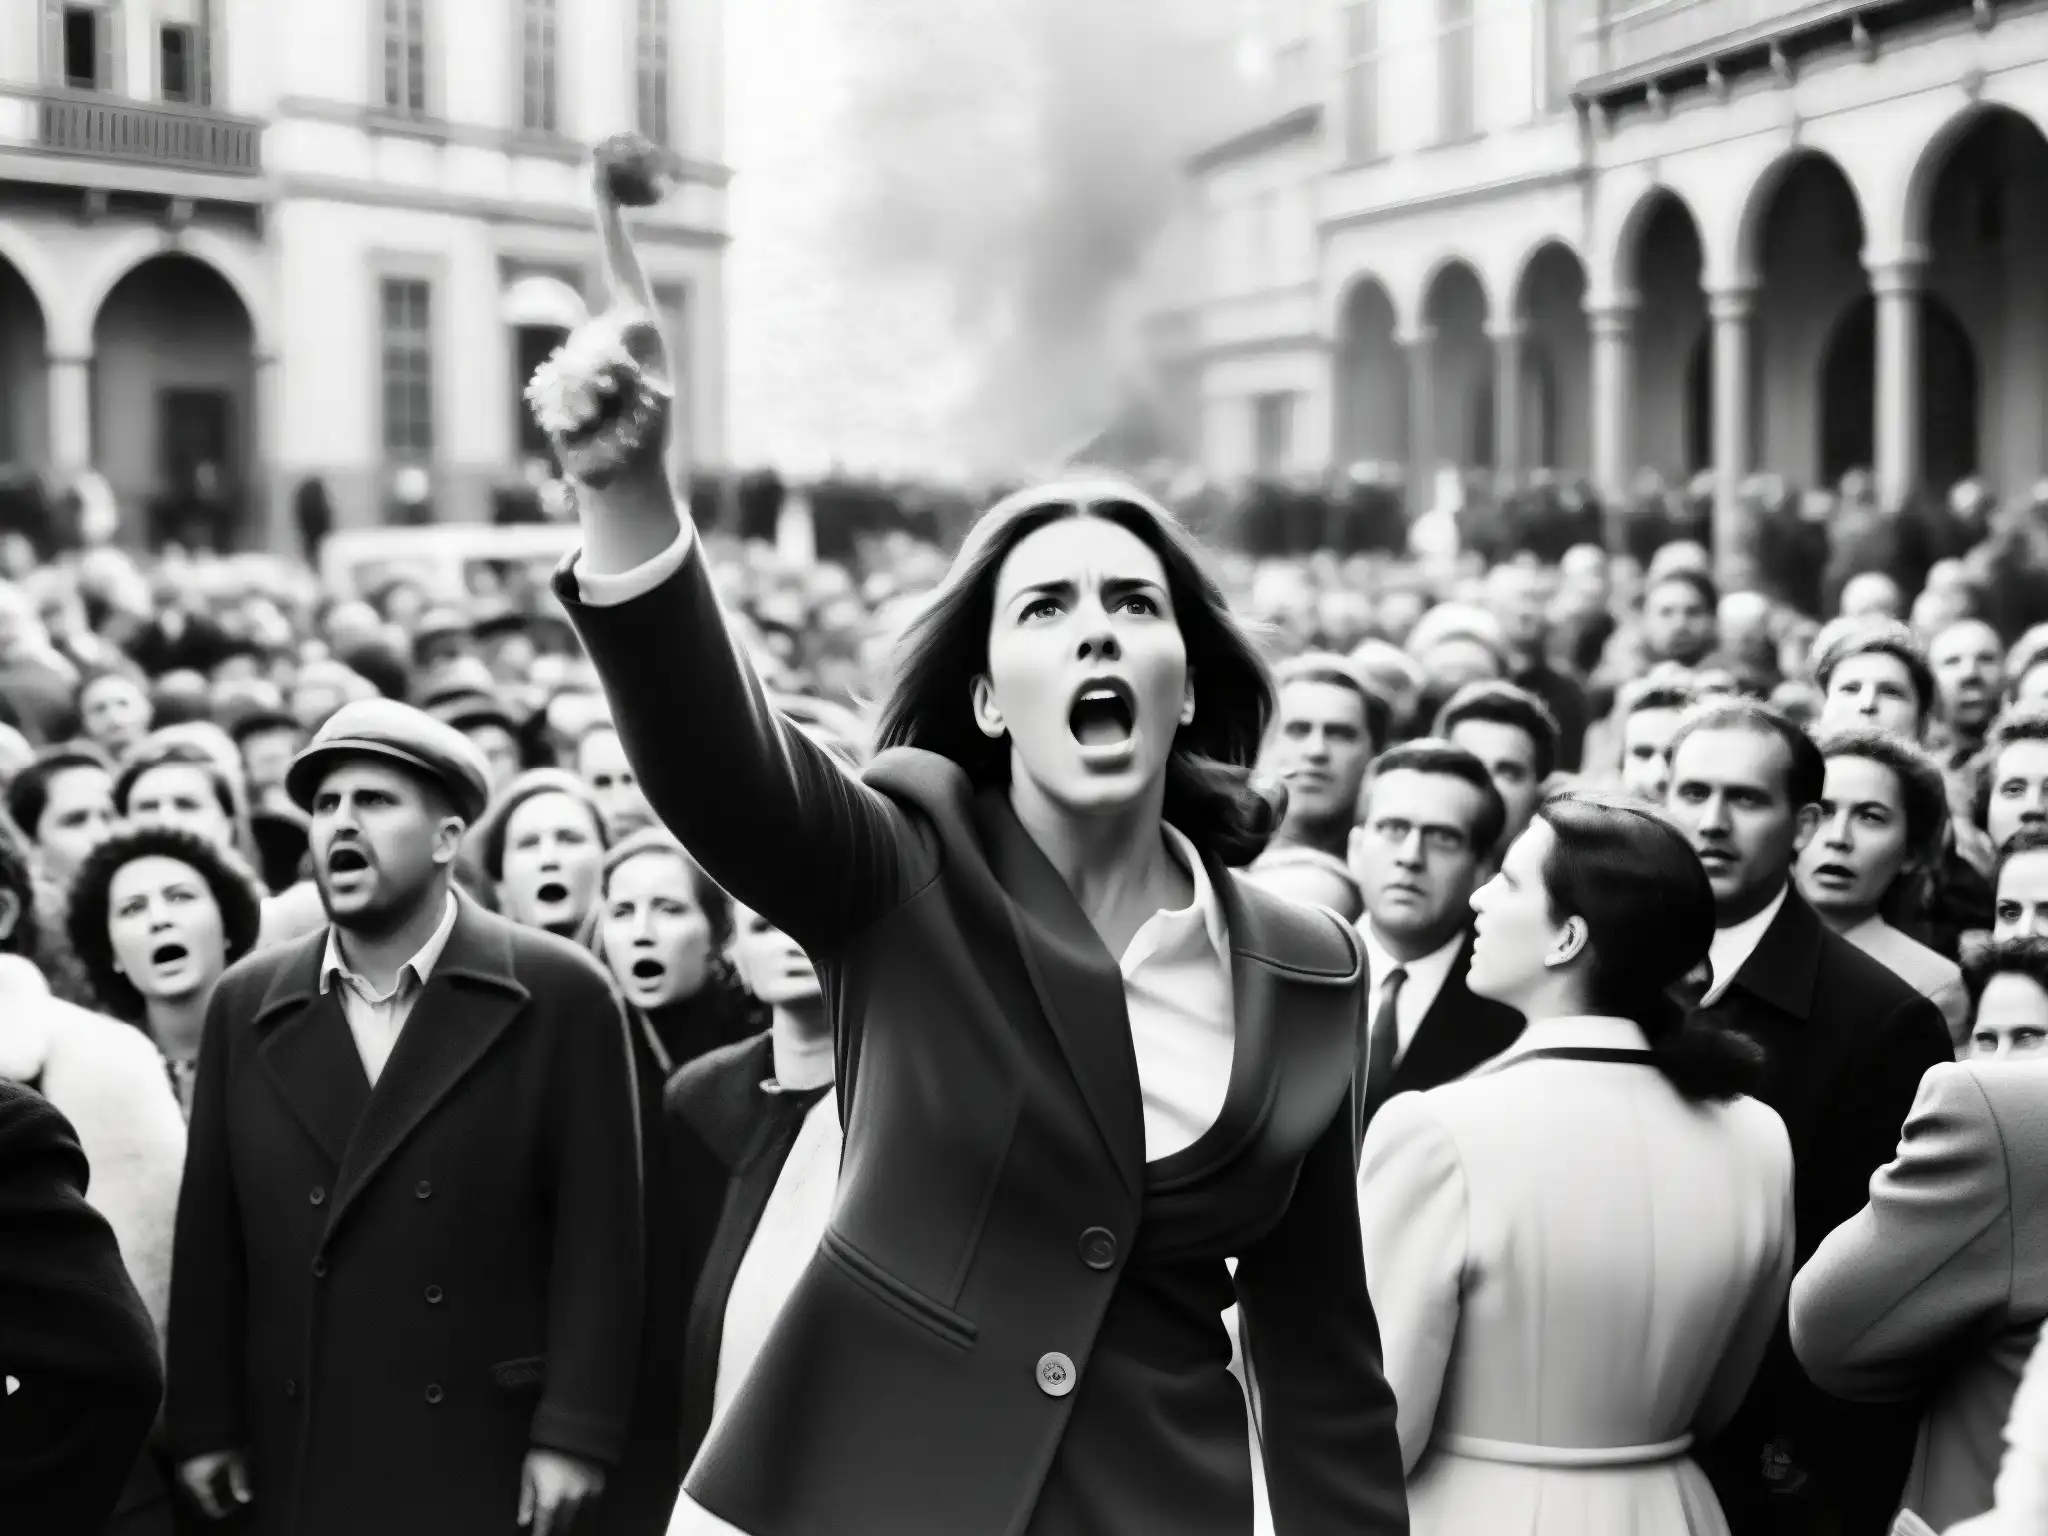 Una fotografía en blanco y negro de una multitud en una plaza, con una mujer rodeada de figuras amenazantes señalando y gritando